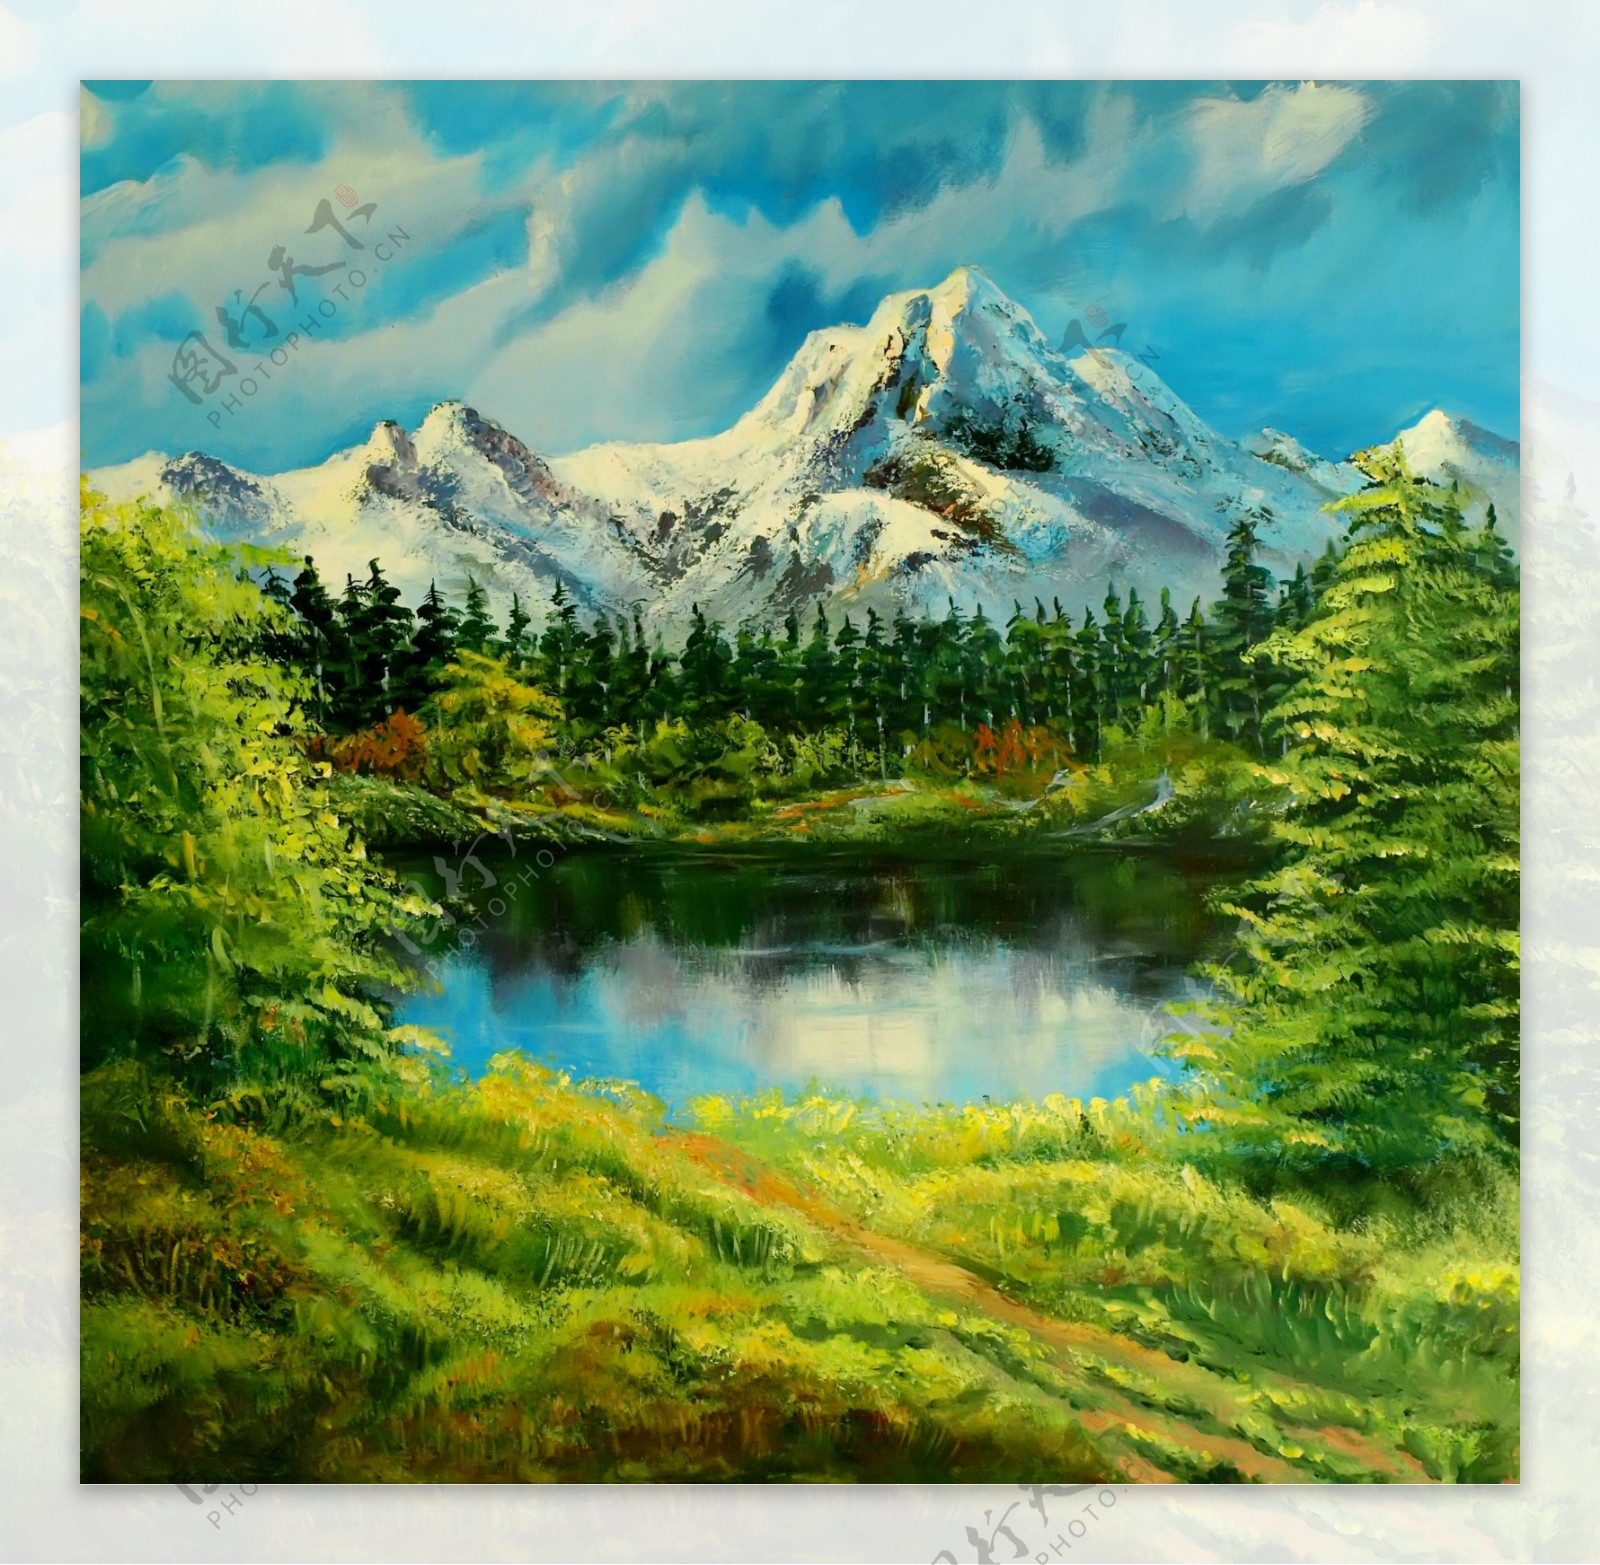 油画雪山湖图片